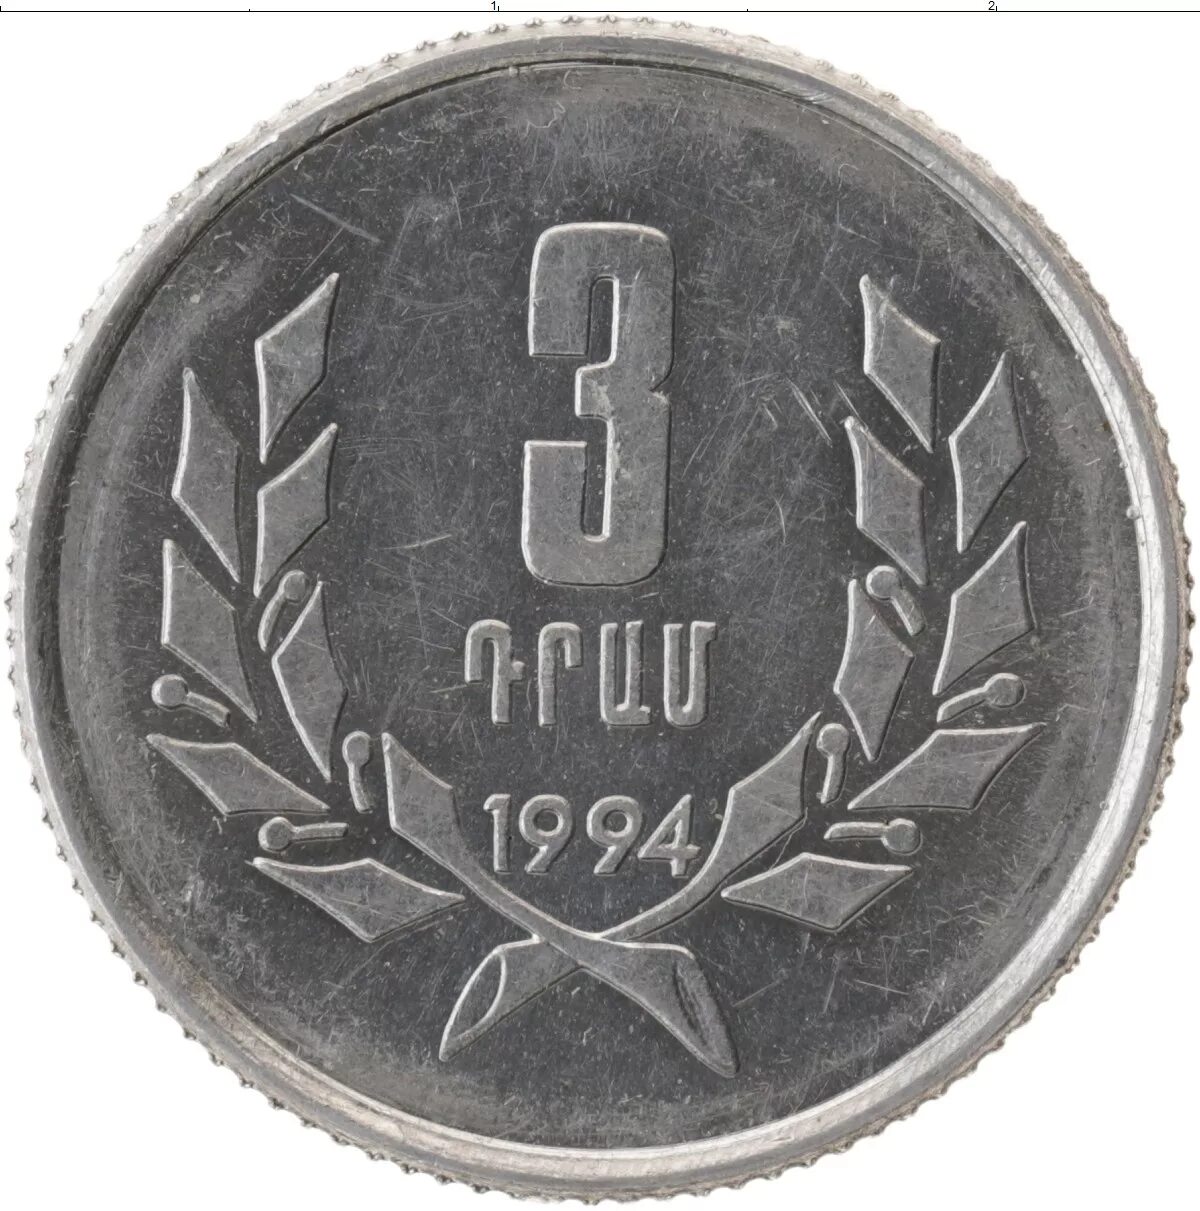 10 от 80 рублей. 3 Драма 1994 Армения. Монета 3 драма 1994 Армения. Монеты Армении 1994. Армянские монеты 1994 года.